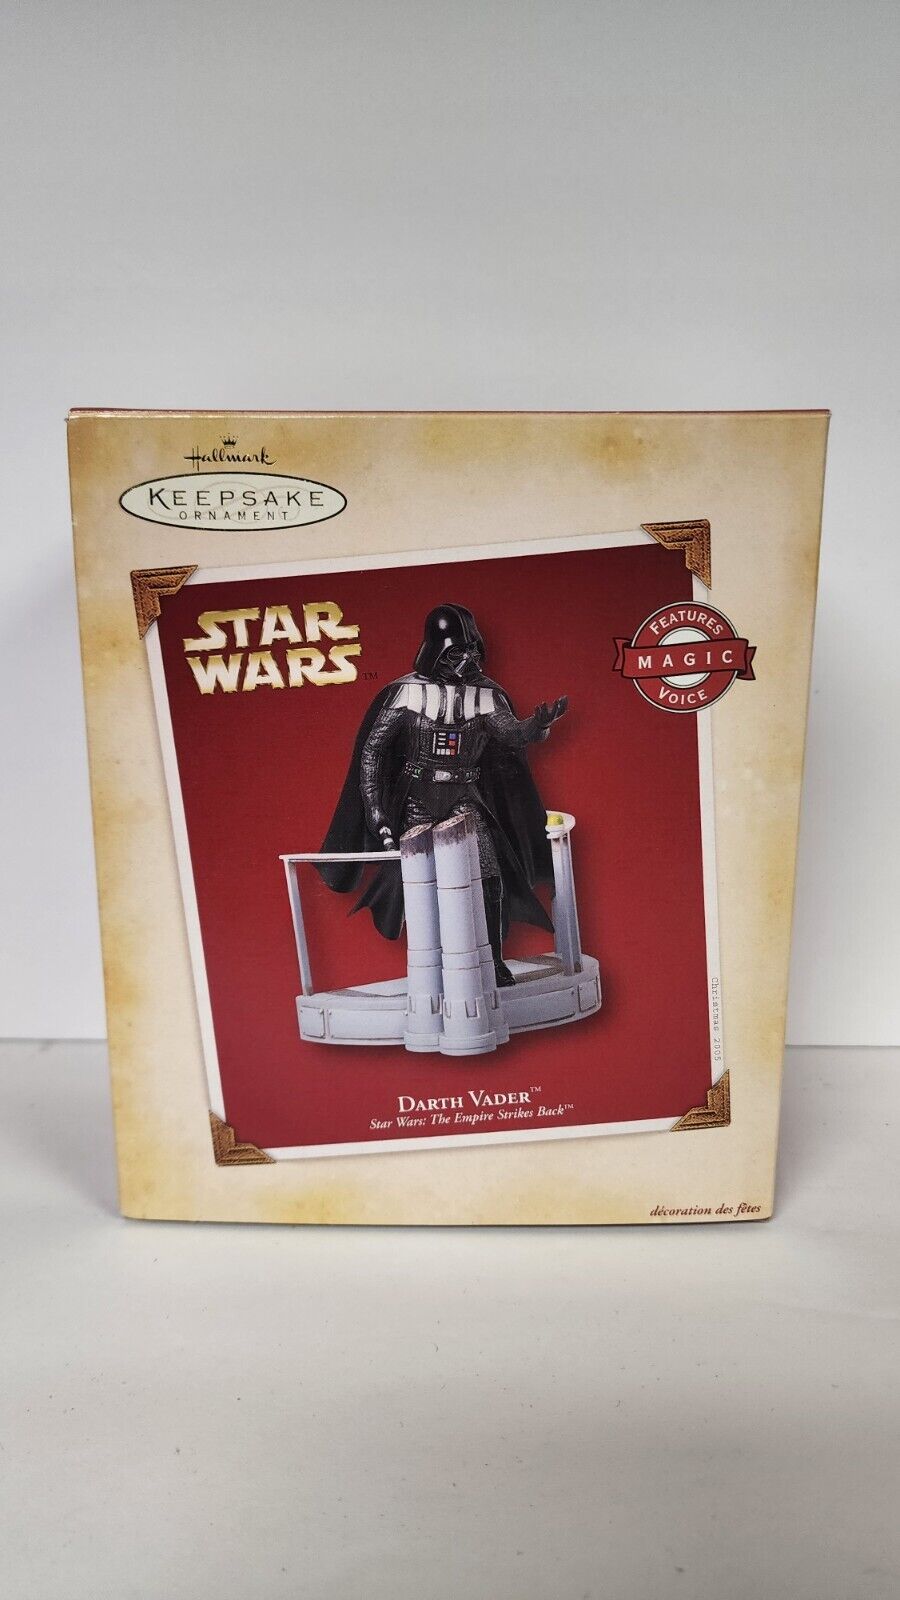 Hallmark Keepsake Ornament - Star Wars: The Empire Strikes Back - Darth Vader 